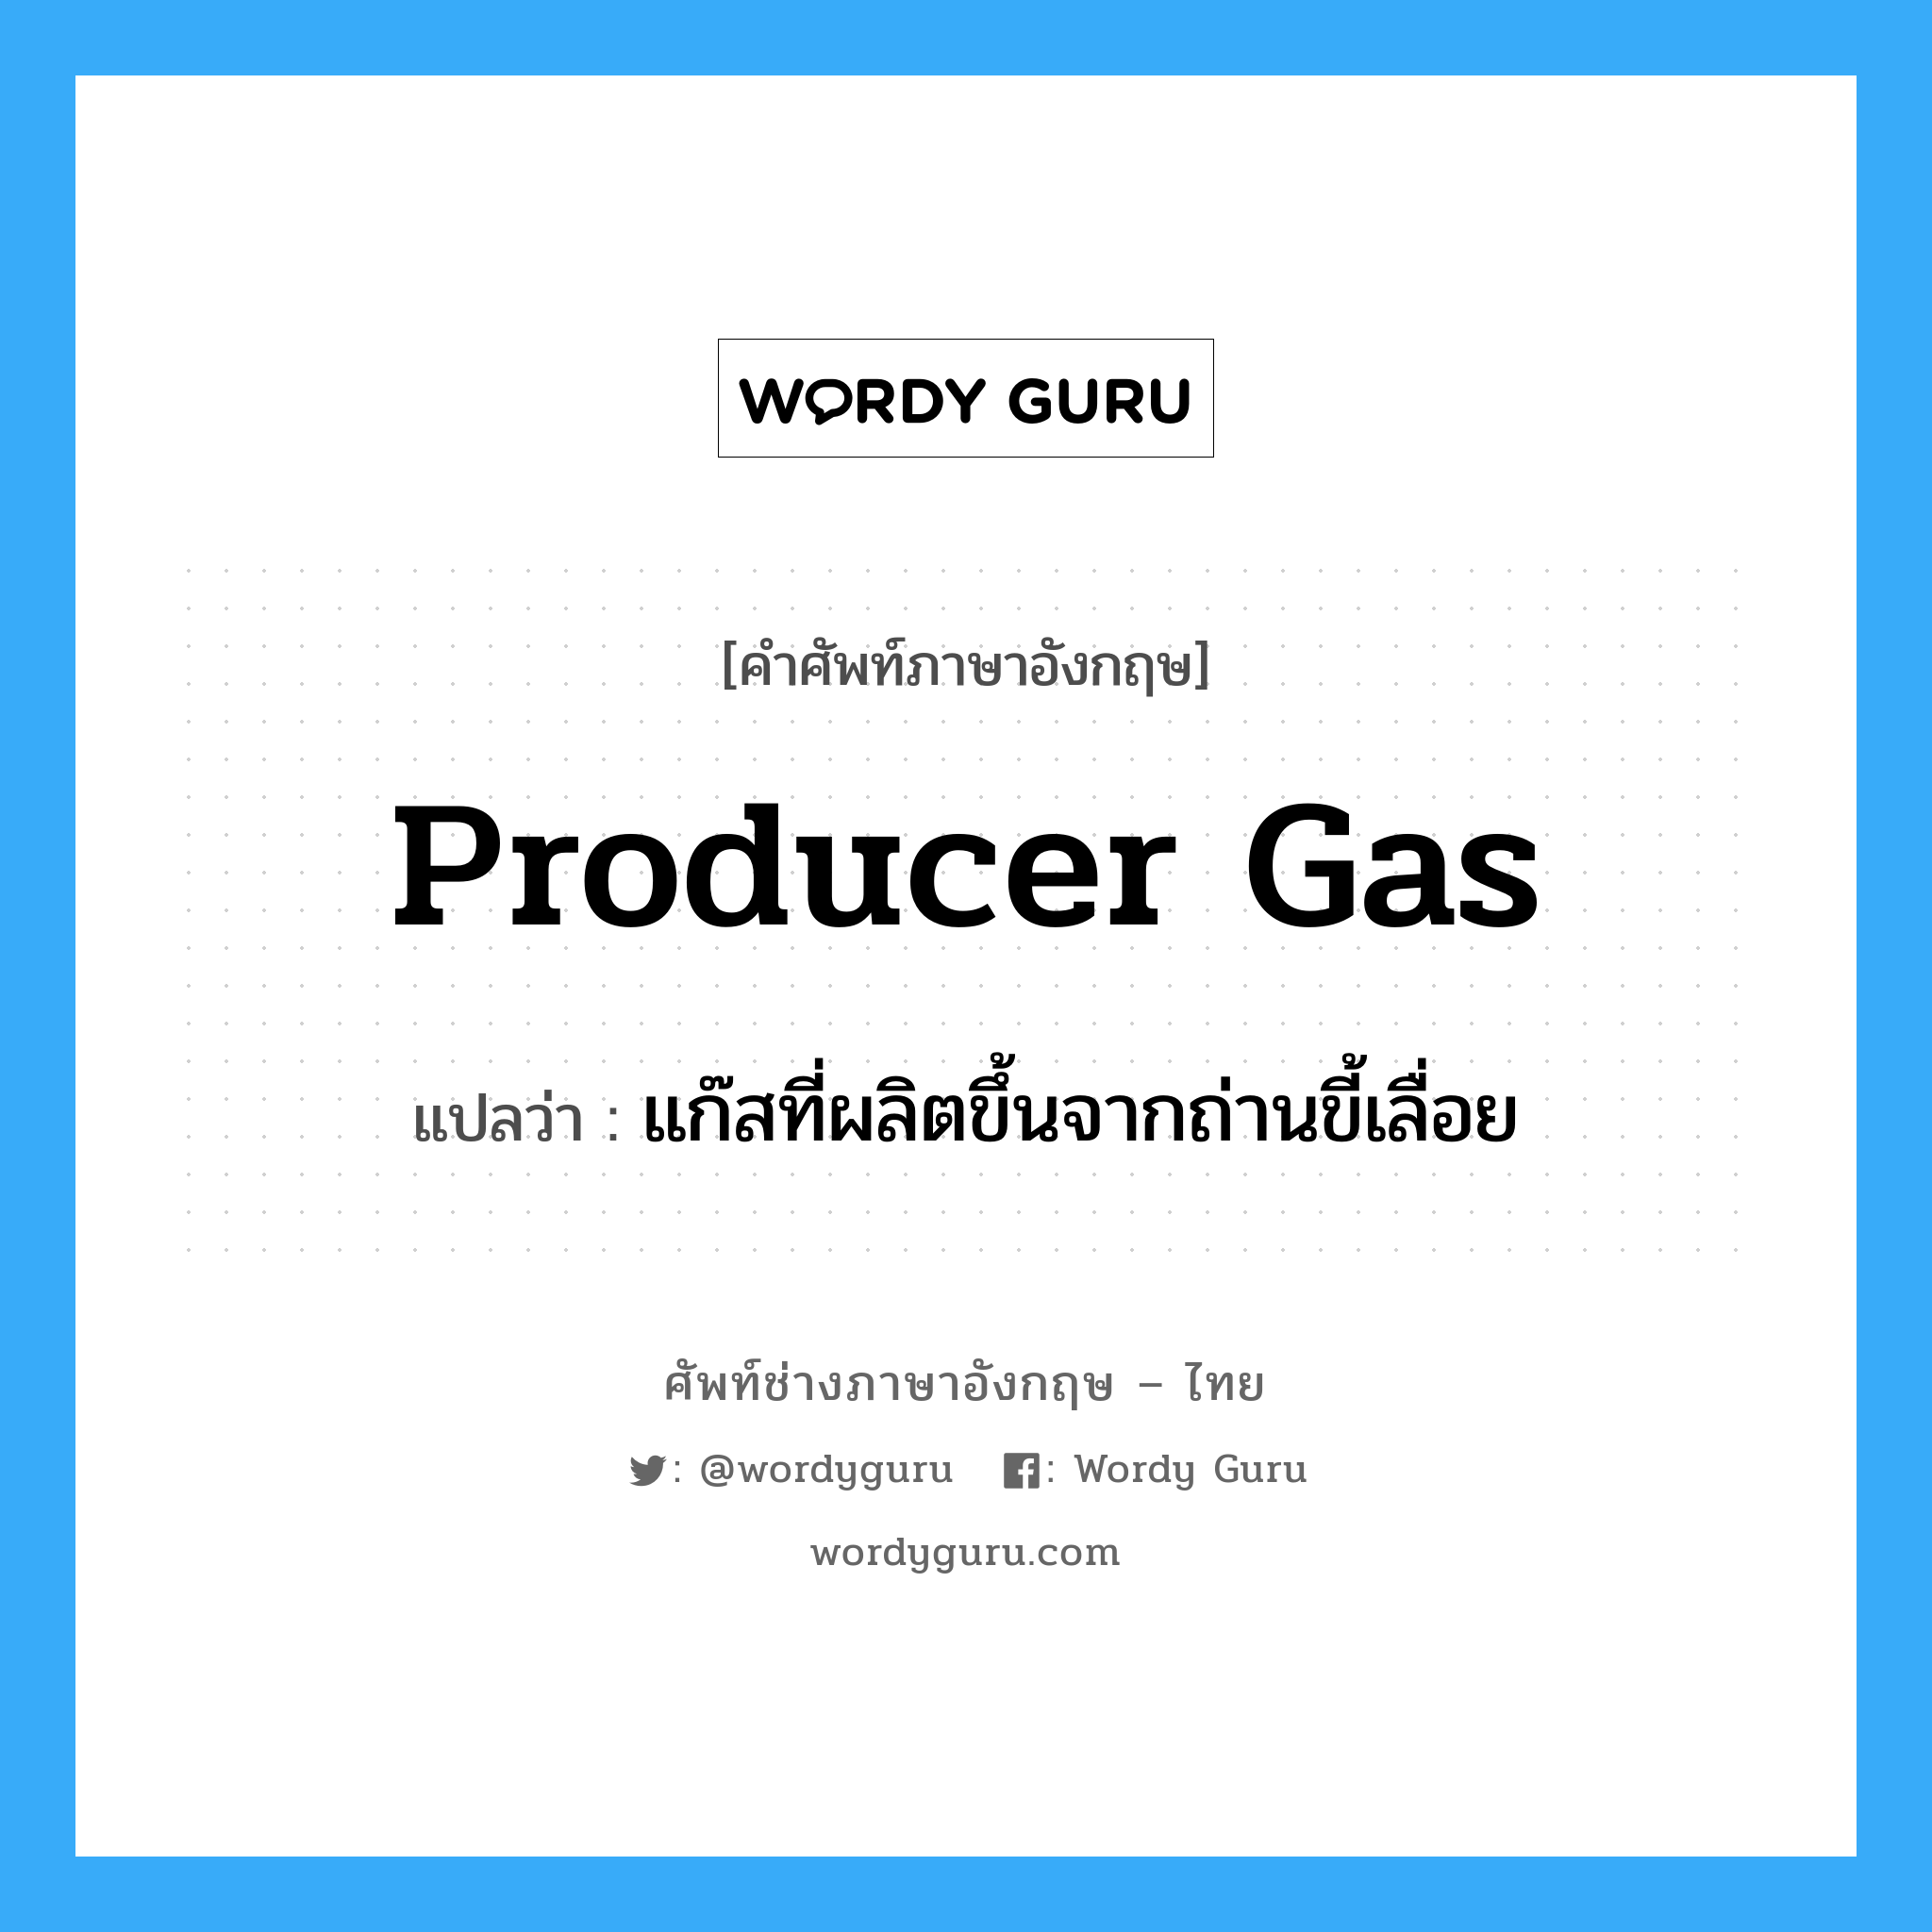 แก๊สที่ผลิตขึ้นจากถ่านขี้เลื่อย ภาษาอังกฤษ?, คำศัพท์ช่างภาษาอังกฤษ - ไทย แก๊สที่ผลิตขึ้นจากถ่านขี้เลื่อย คำศัพท์ภาษาอังกฤษ แก๊สที่ผลิตขึ้นจากถ่านขี้เลื่อย แปลว่า producer gas